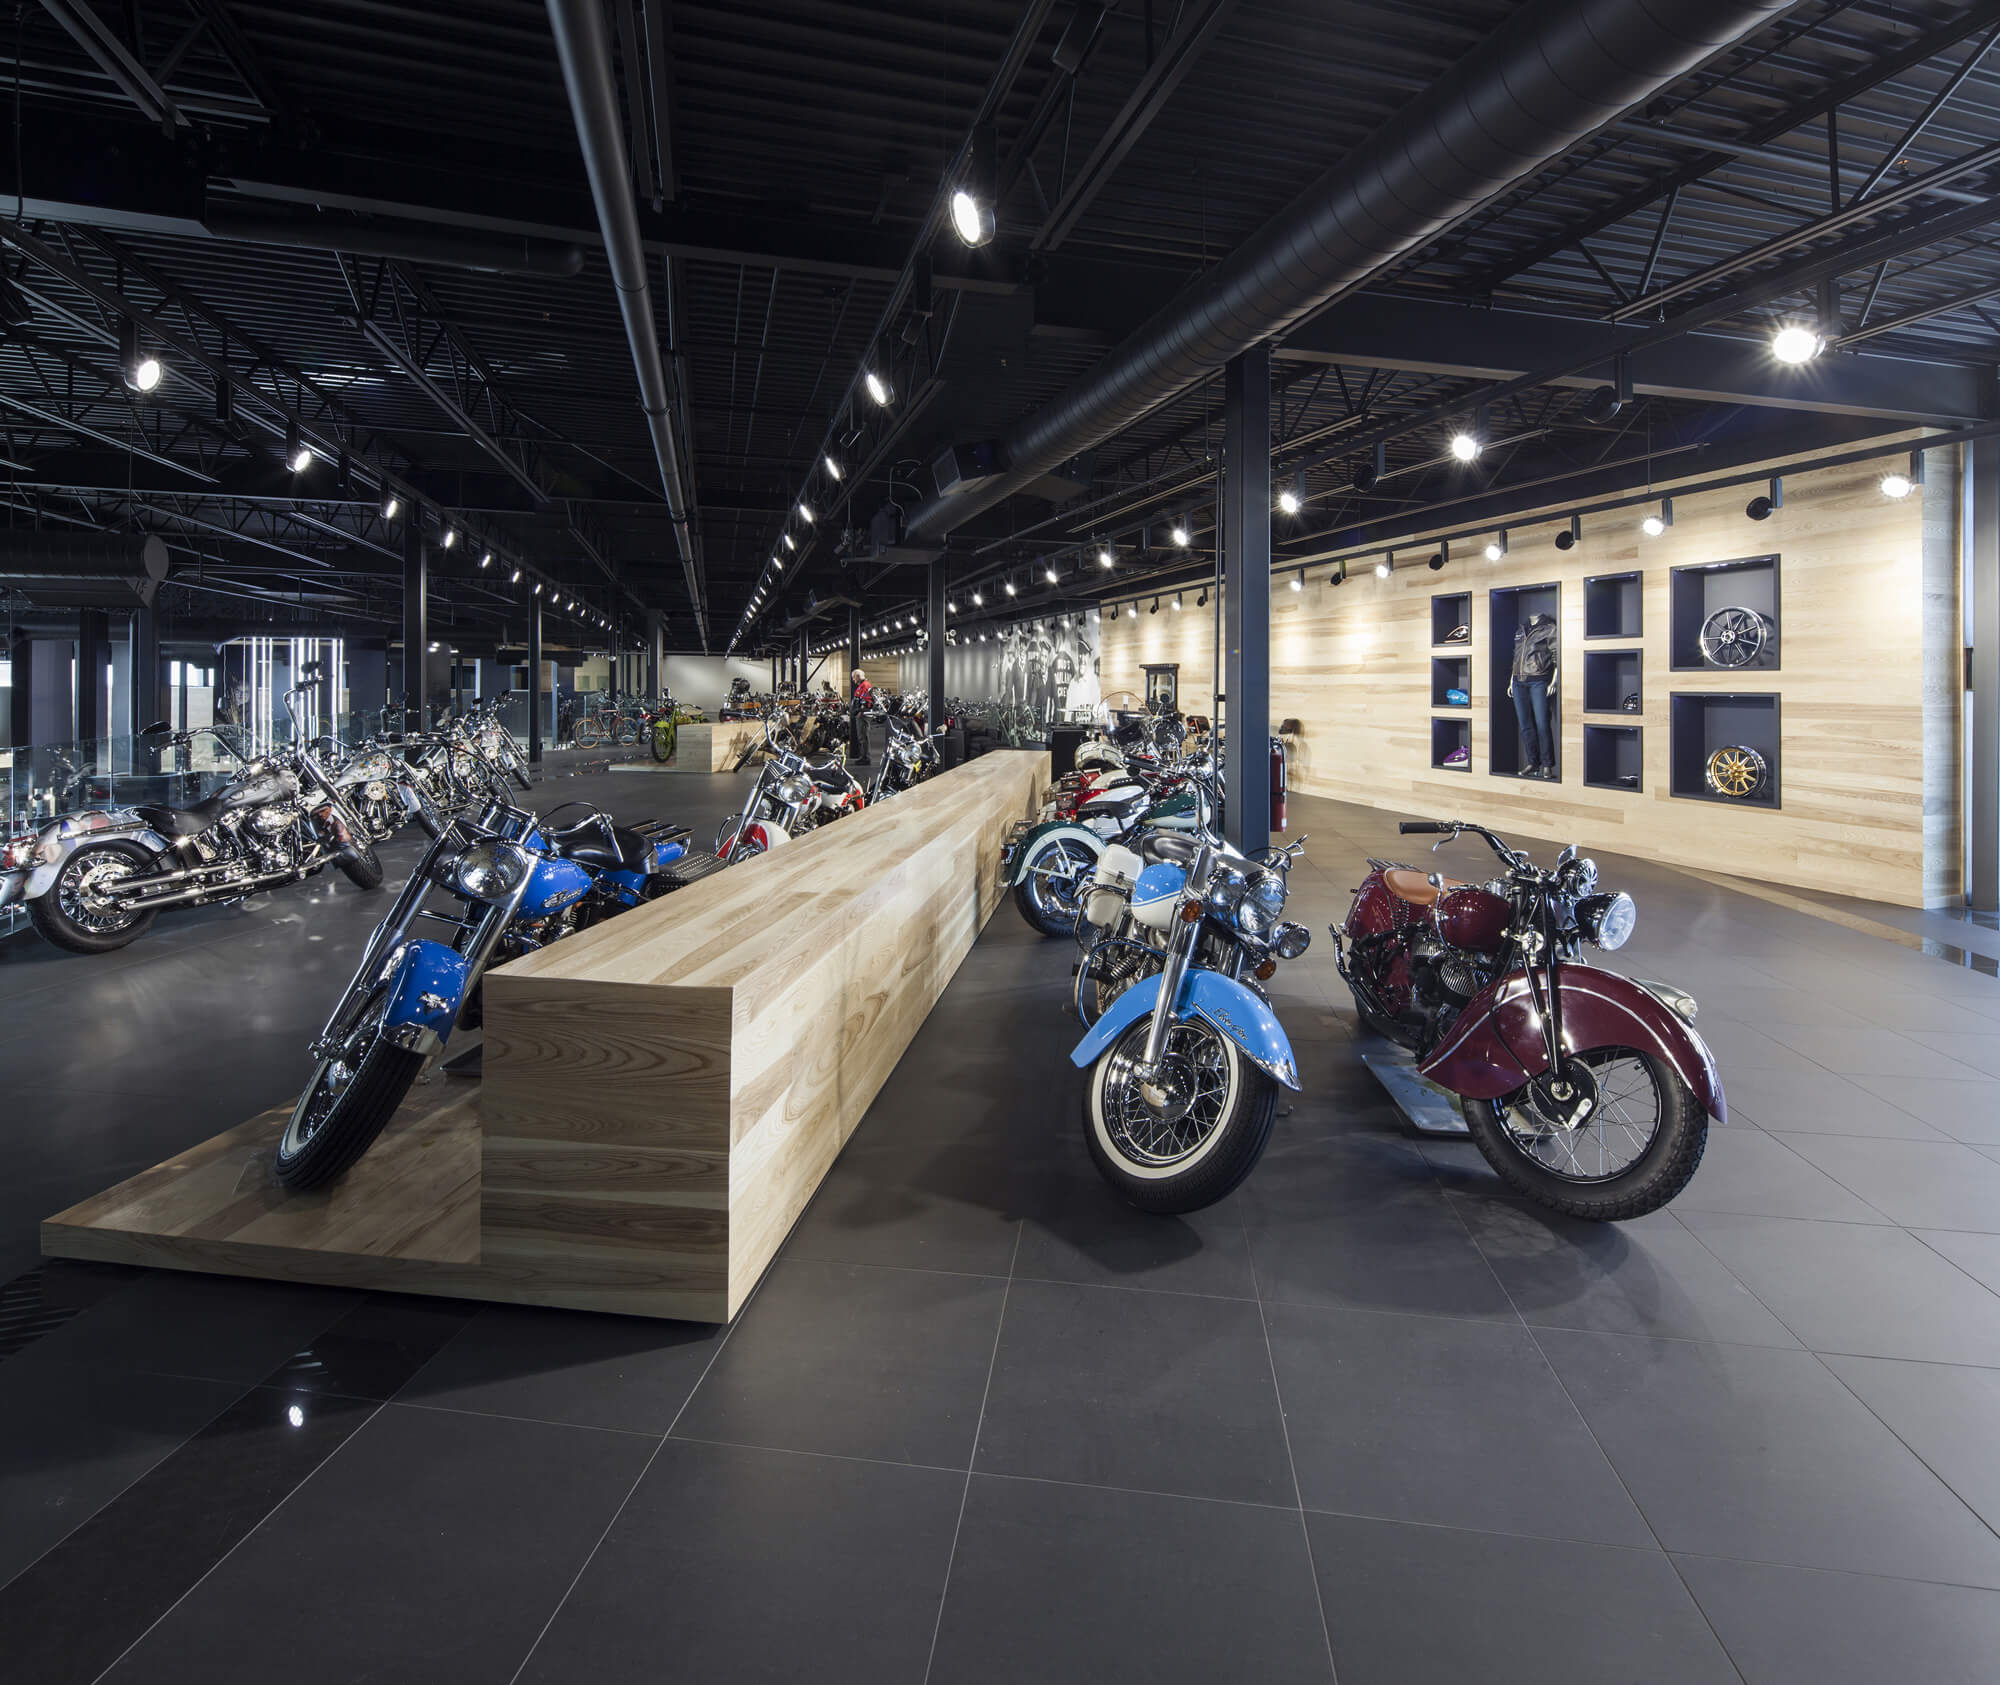 Prémont Harley-Davidson par Bourgeois / Lechasseur architectes